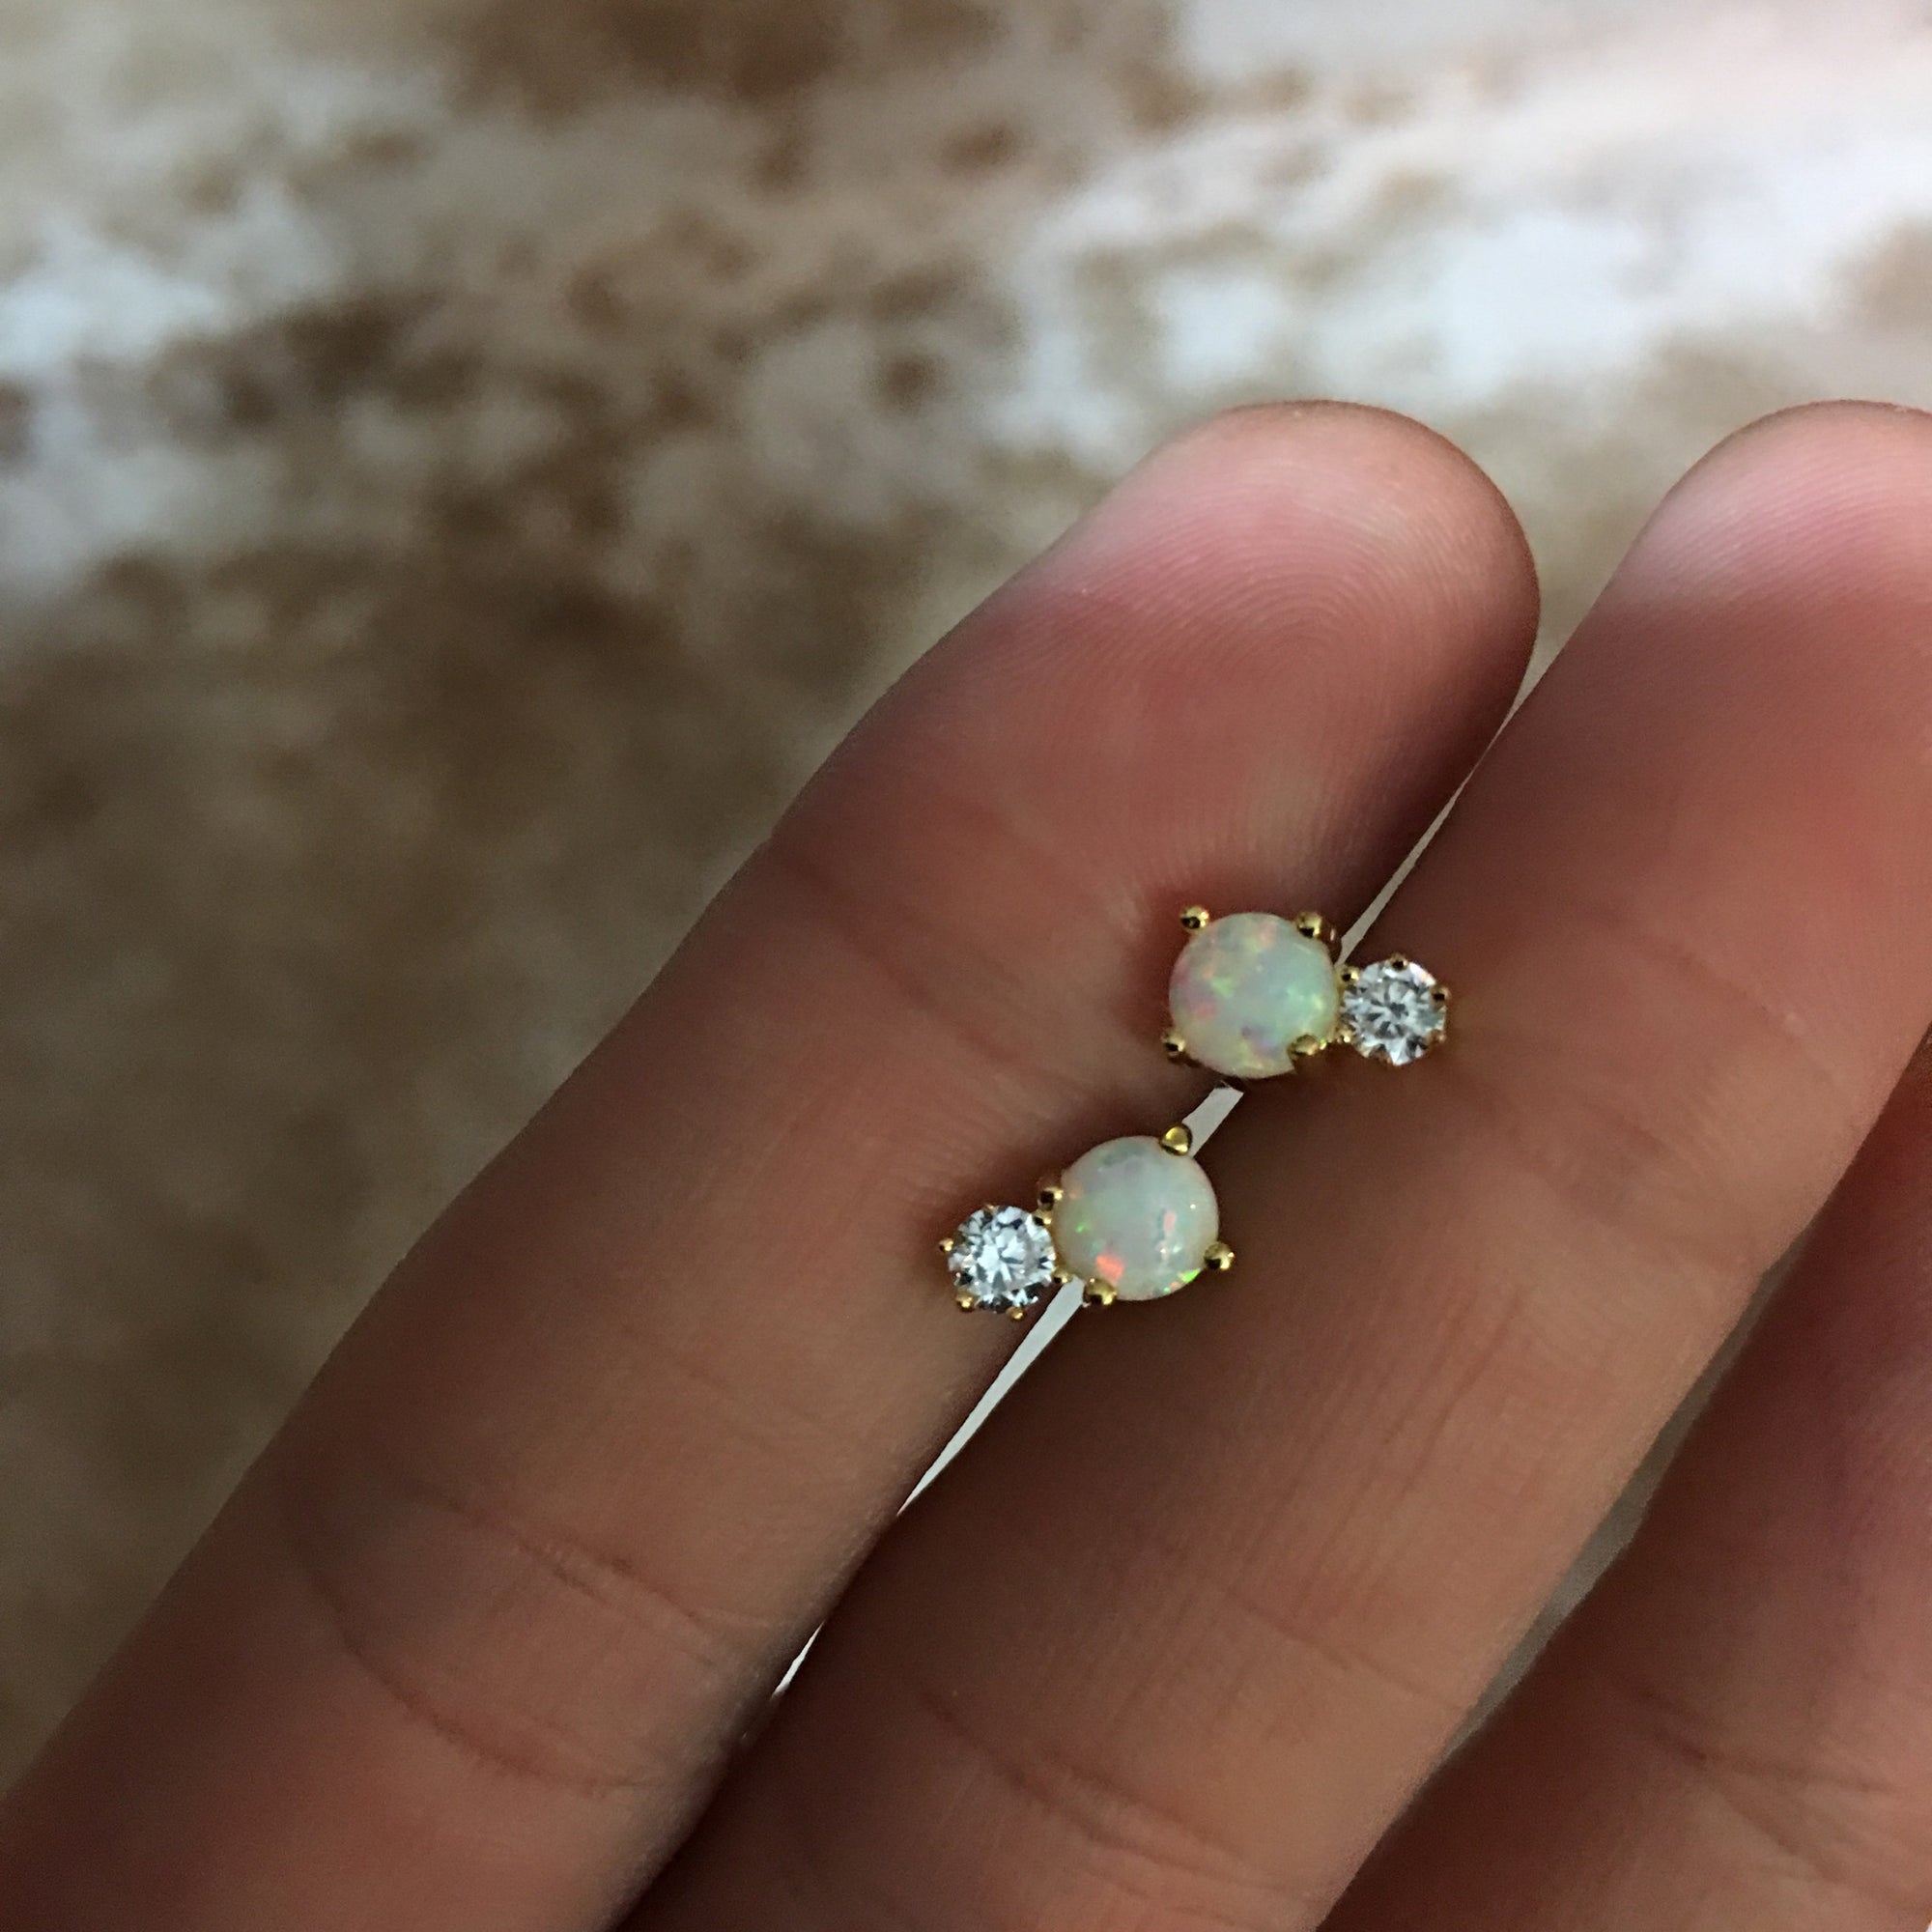 Artificial diamond earrings